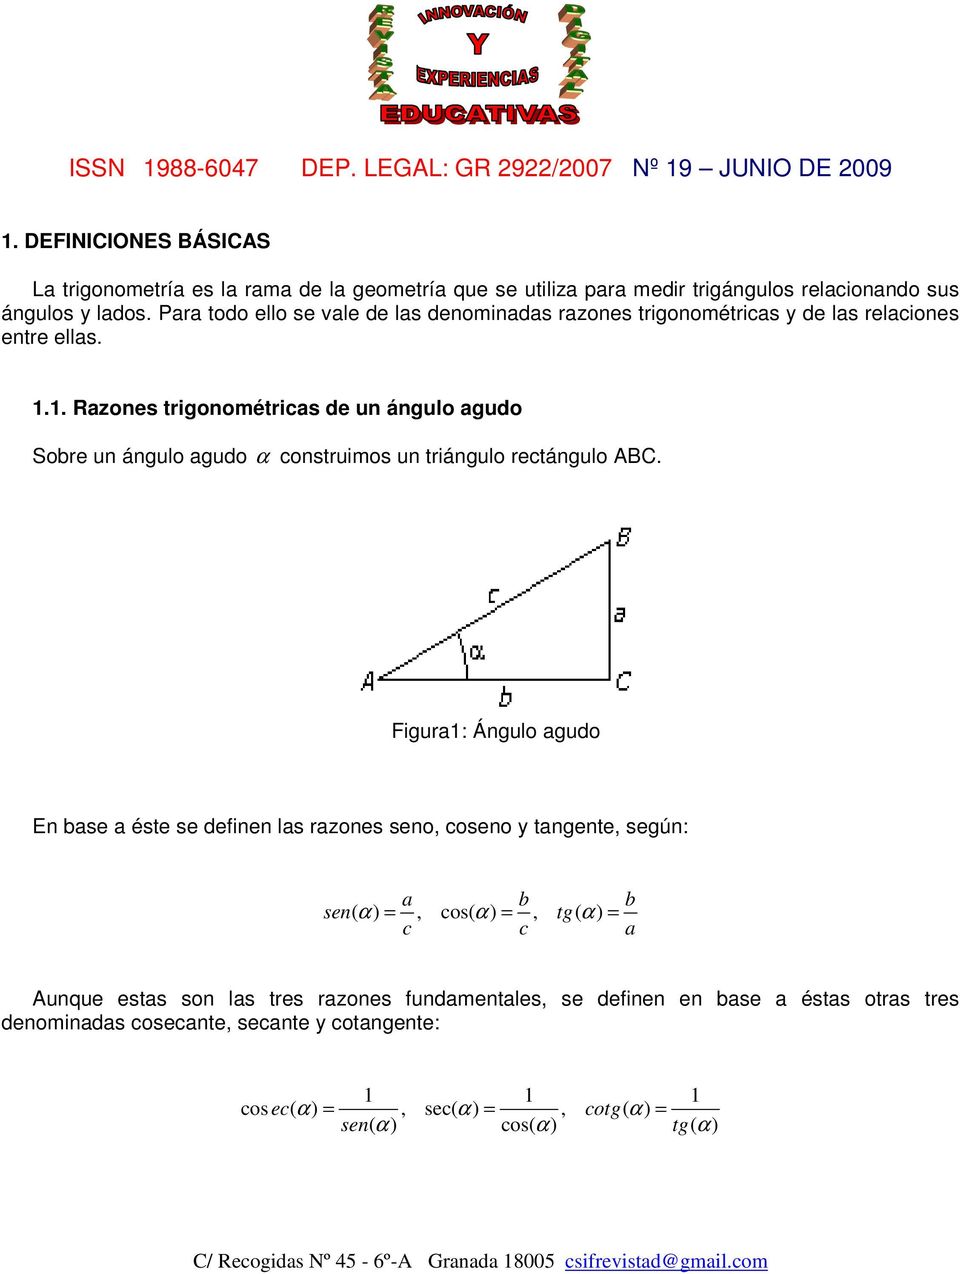 1. Razones trigonométricas de un ángulo agudo Sobre un ángulo agudo α construimos un triángulo rectángulo ABC.